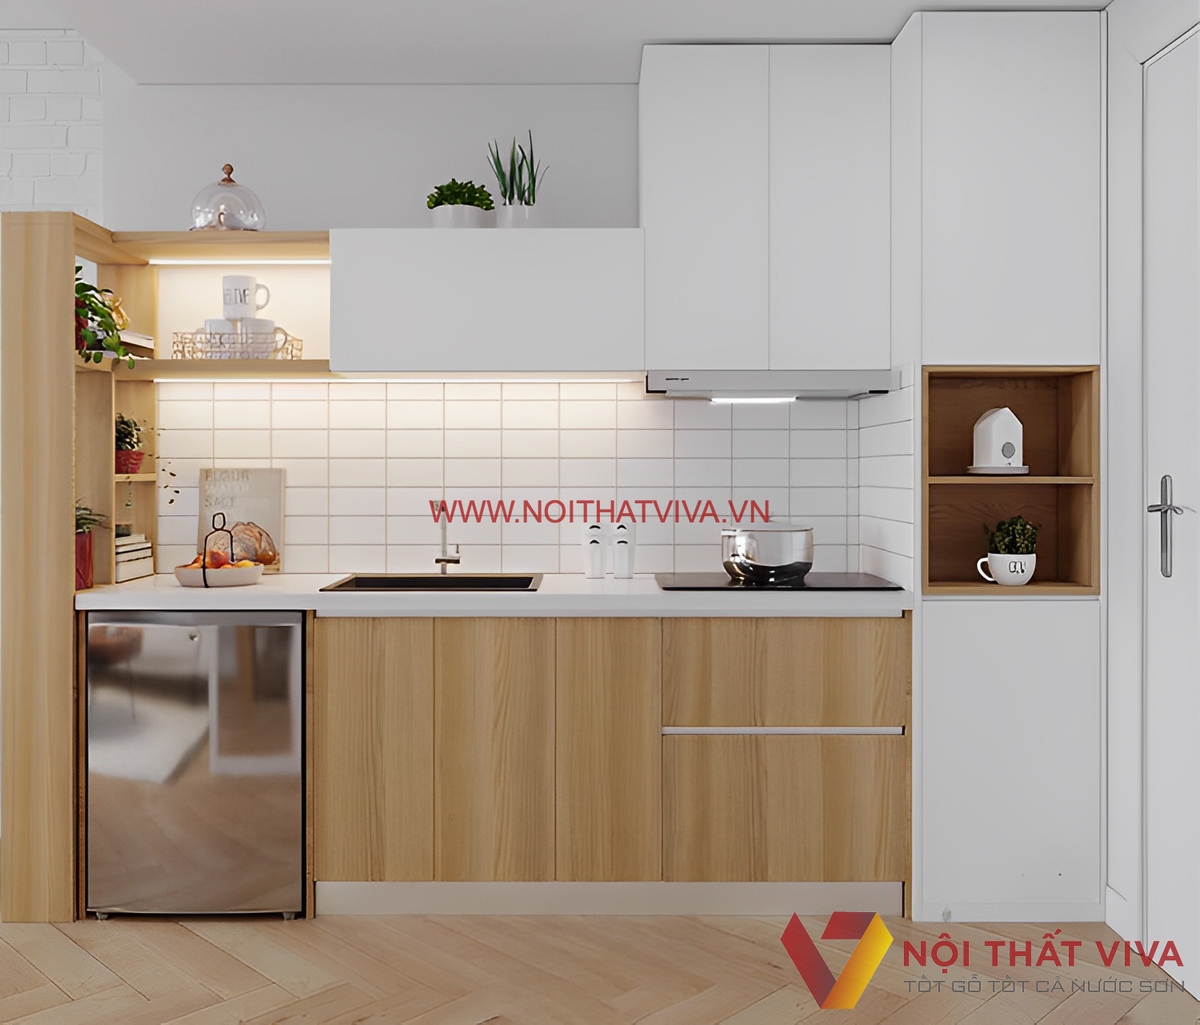 Với tủ bếp mini hình chữ I, bạn sẽ không những sở hữu một chiếc tủ bếp đẹp mắt mà còn tiết kiệm được diện tích và tạo cảm giác rộng rãi cho căn bếp nhỏ của bạn. Kiểu dáng hiện đại và tối giản sẽ cập nhật nét đặc trưng cho phong cách bếp của bạn.